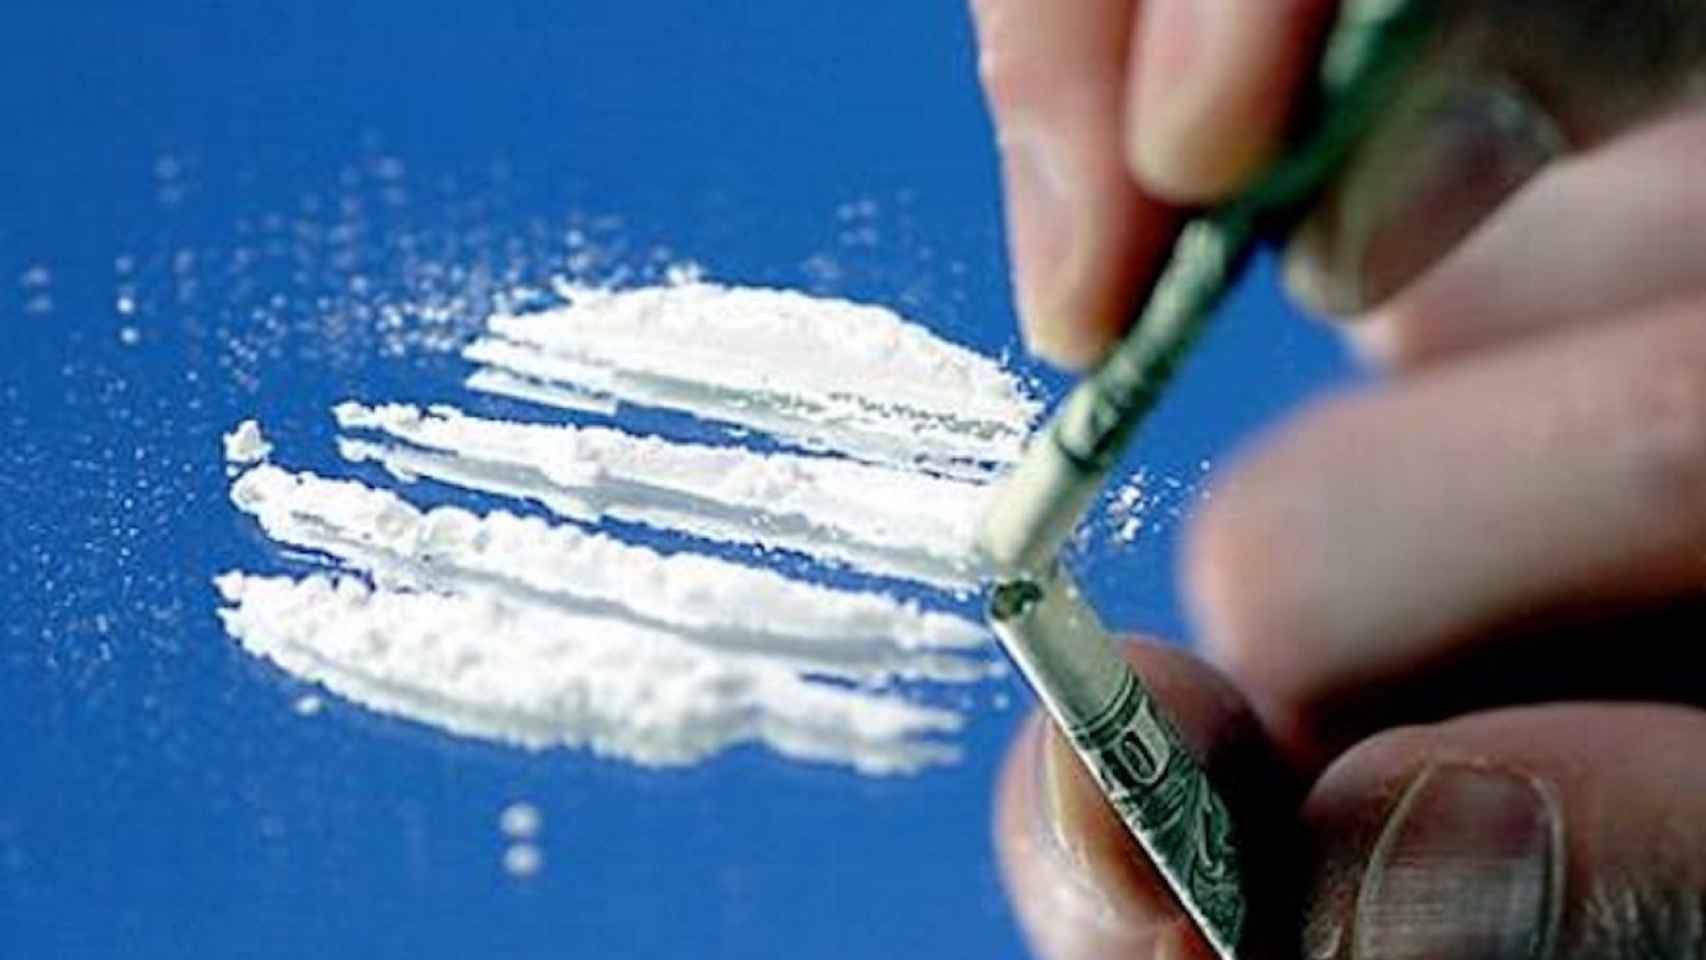 Una imagen ilustrativa de una persona consumiendo cocaína / EFE